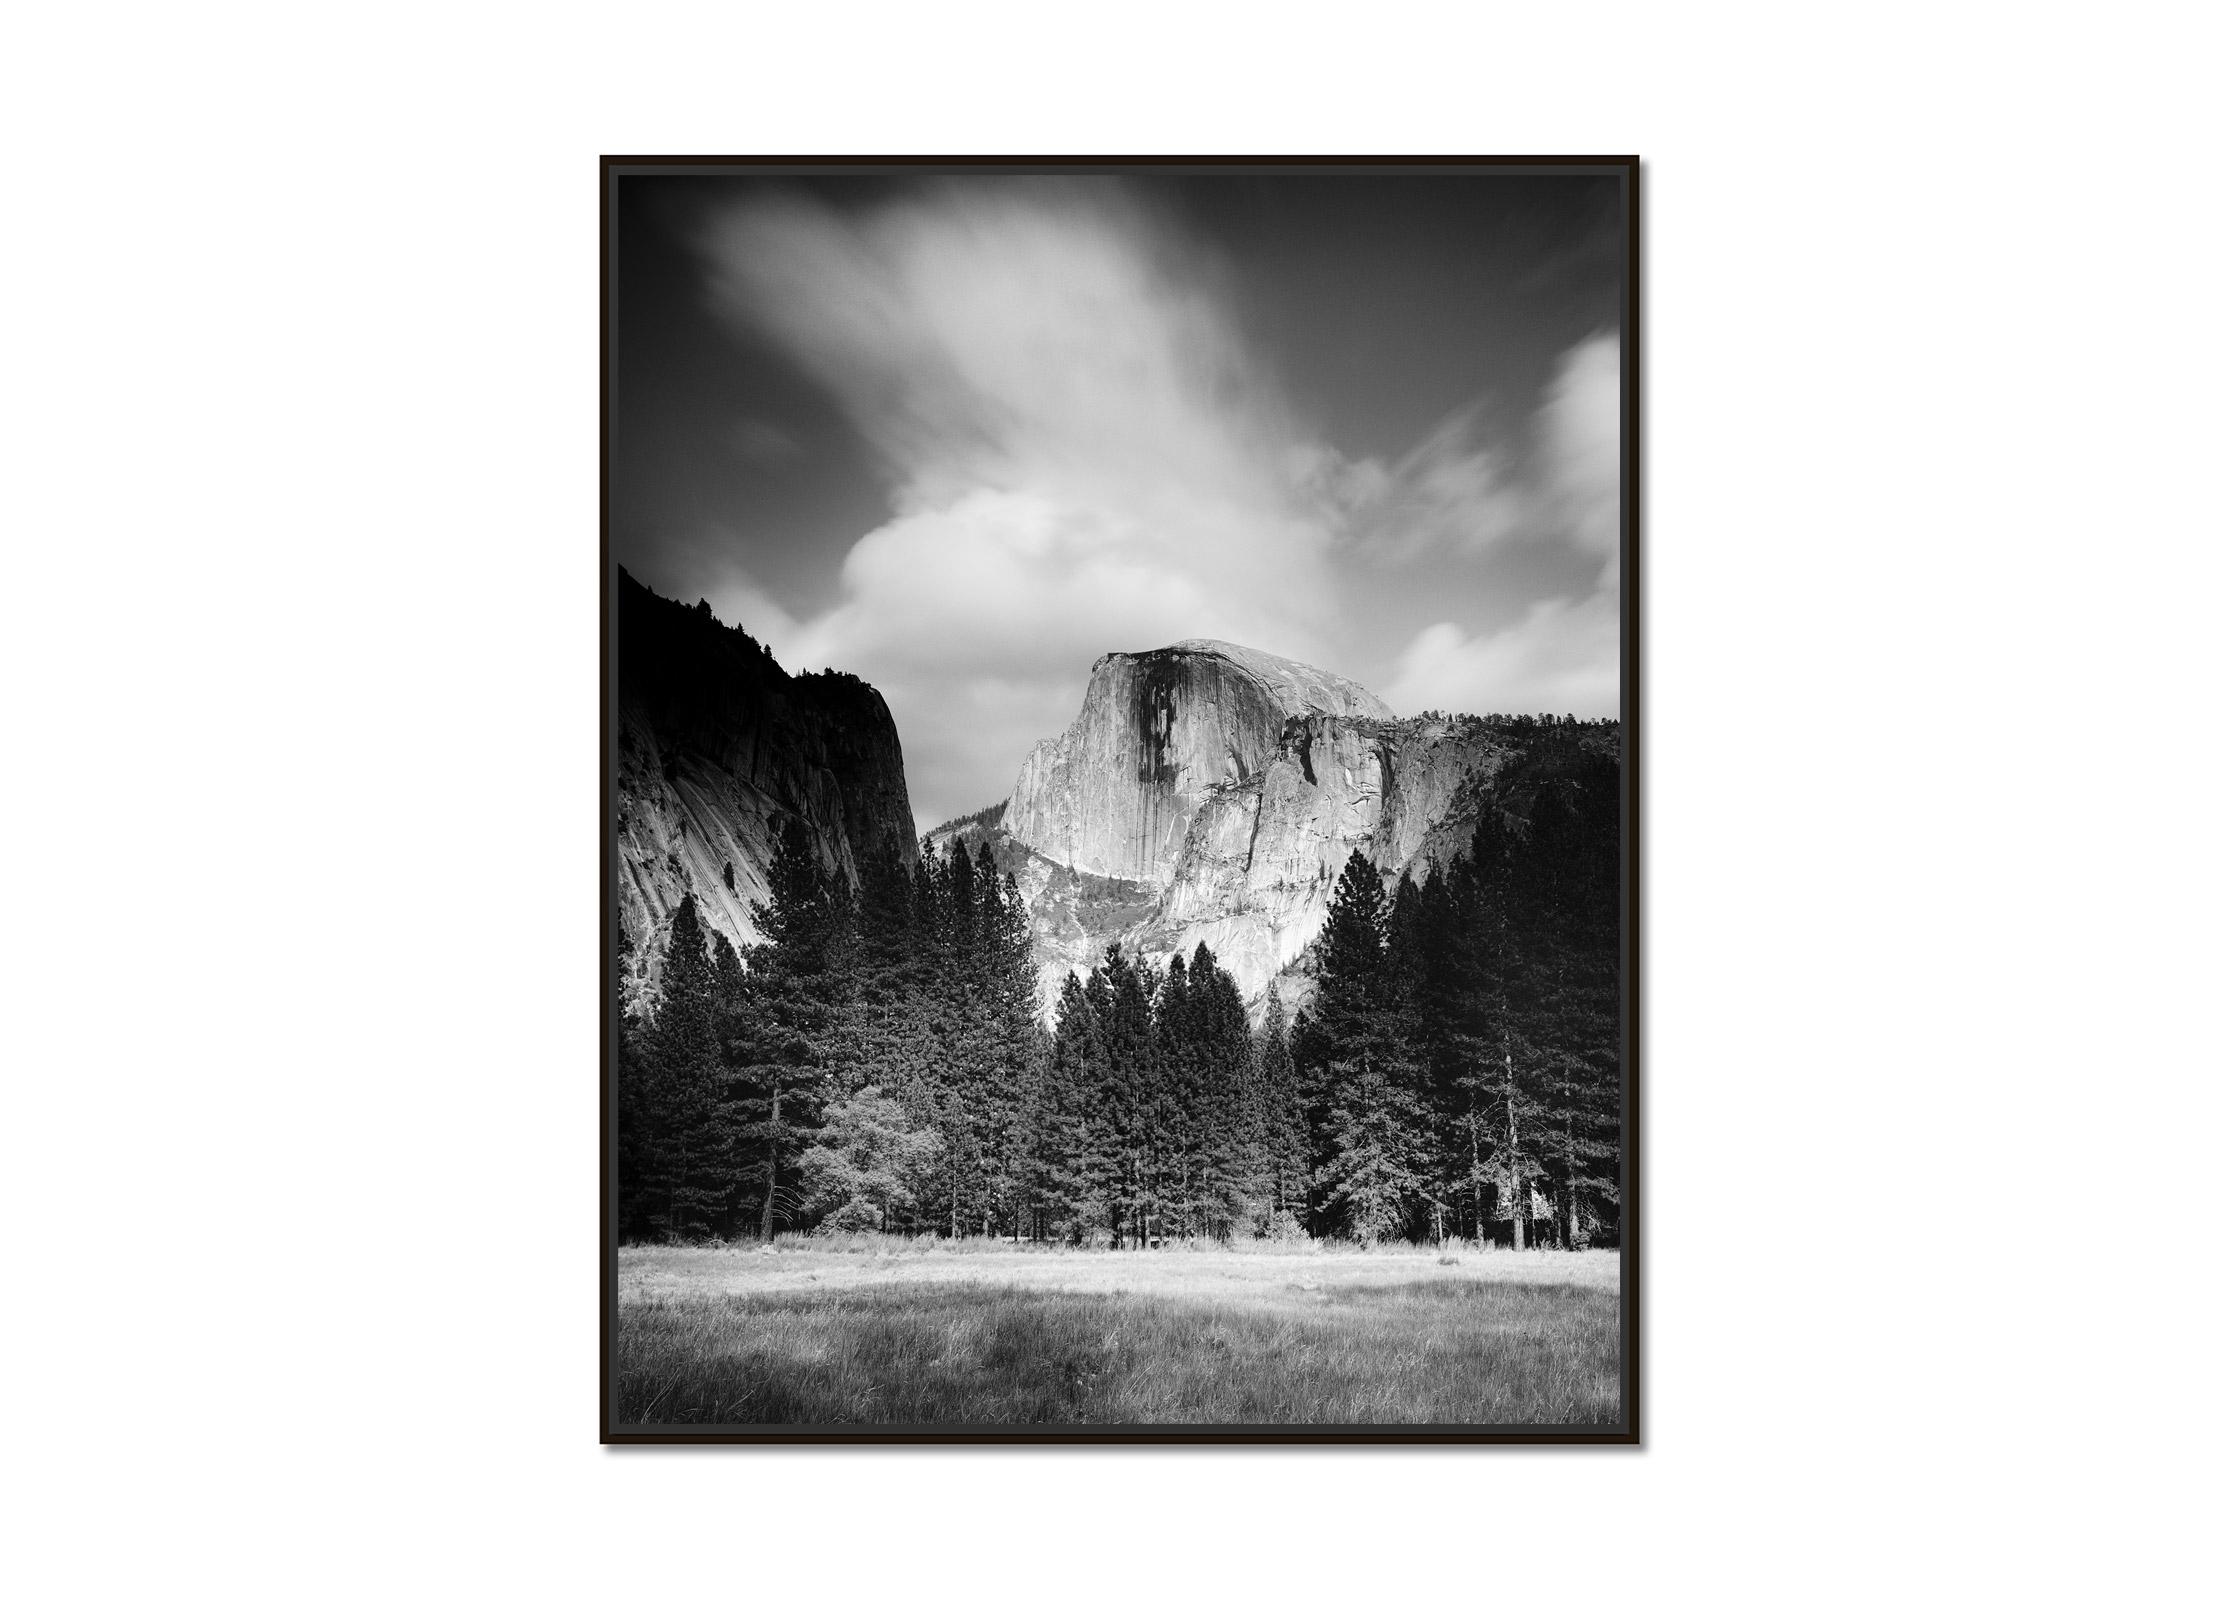 Half Dome, Yosemite National Park, USA, photographie noir et blanc, paysage - Photograph de Gerald Berghammer